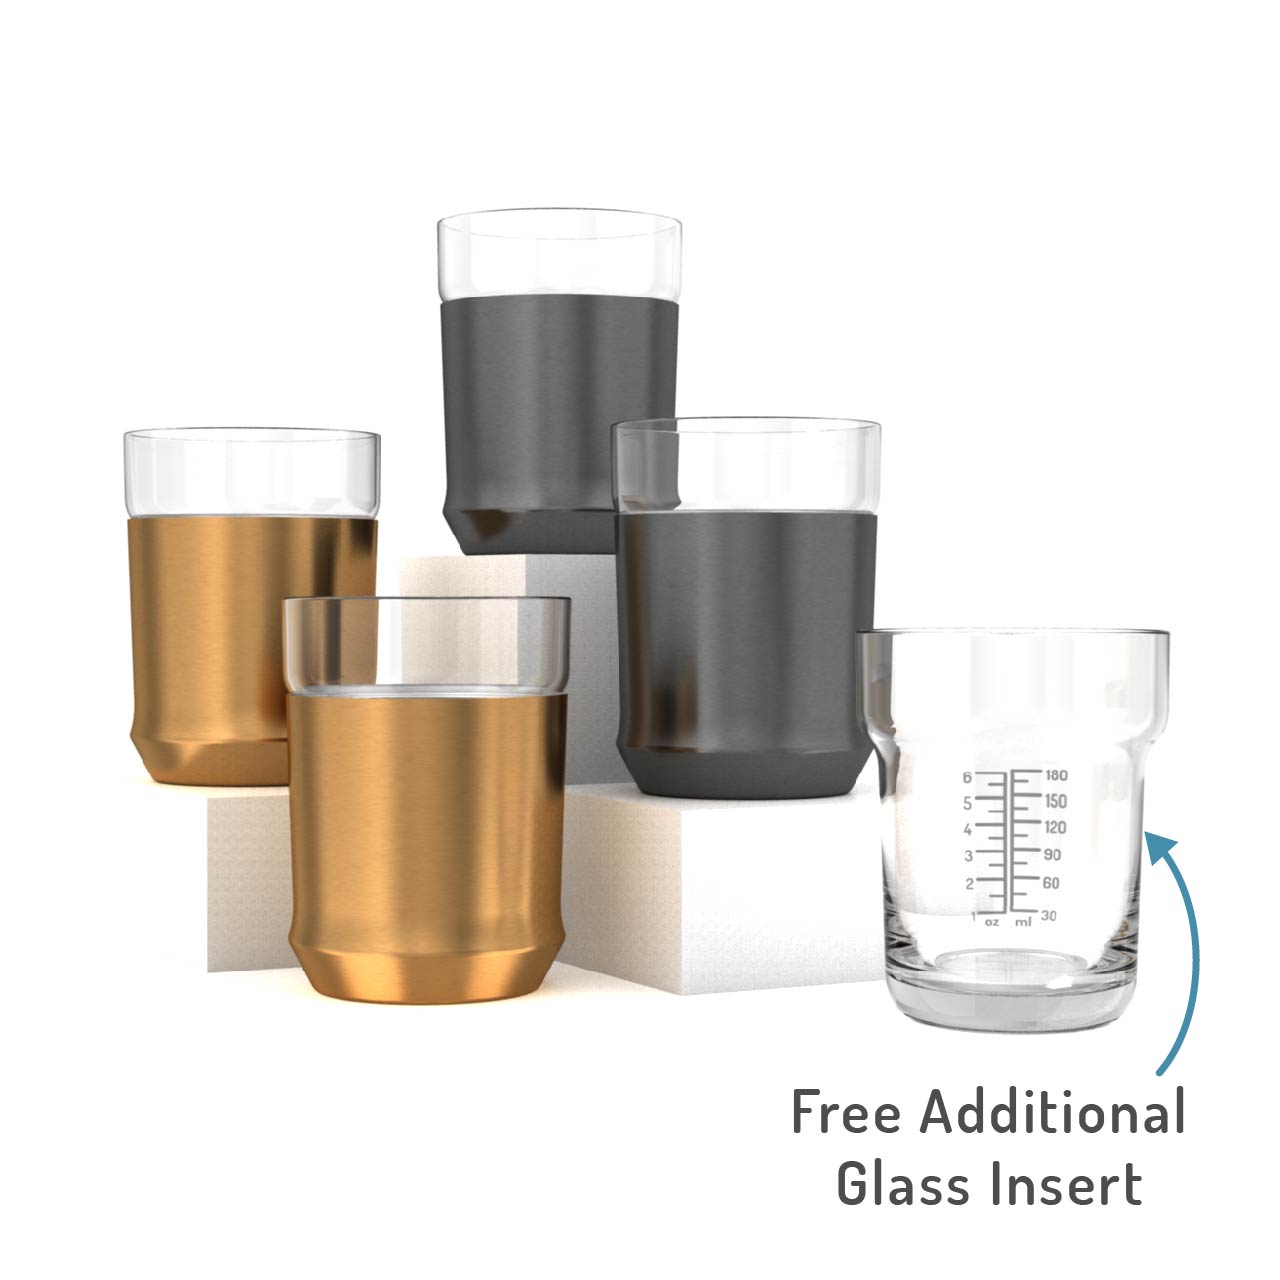 Shop Hybrid Cocktail Shaker & Hybrid Cocktail Glasses – Elevated Craft